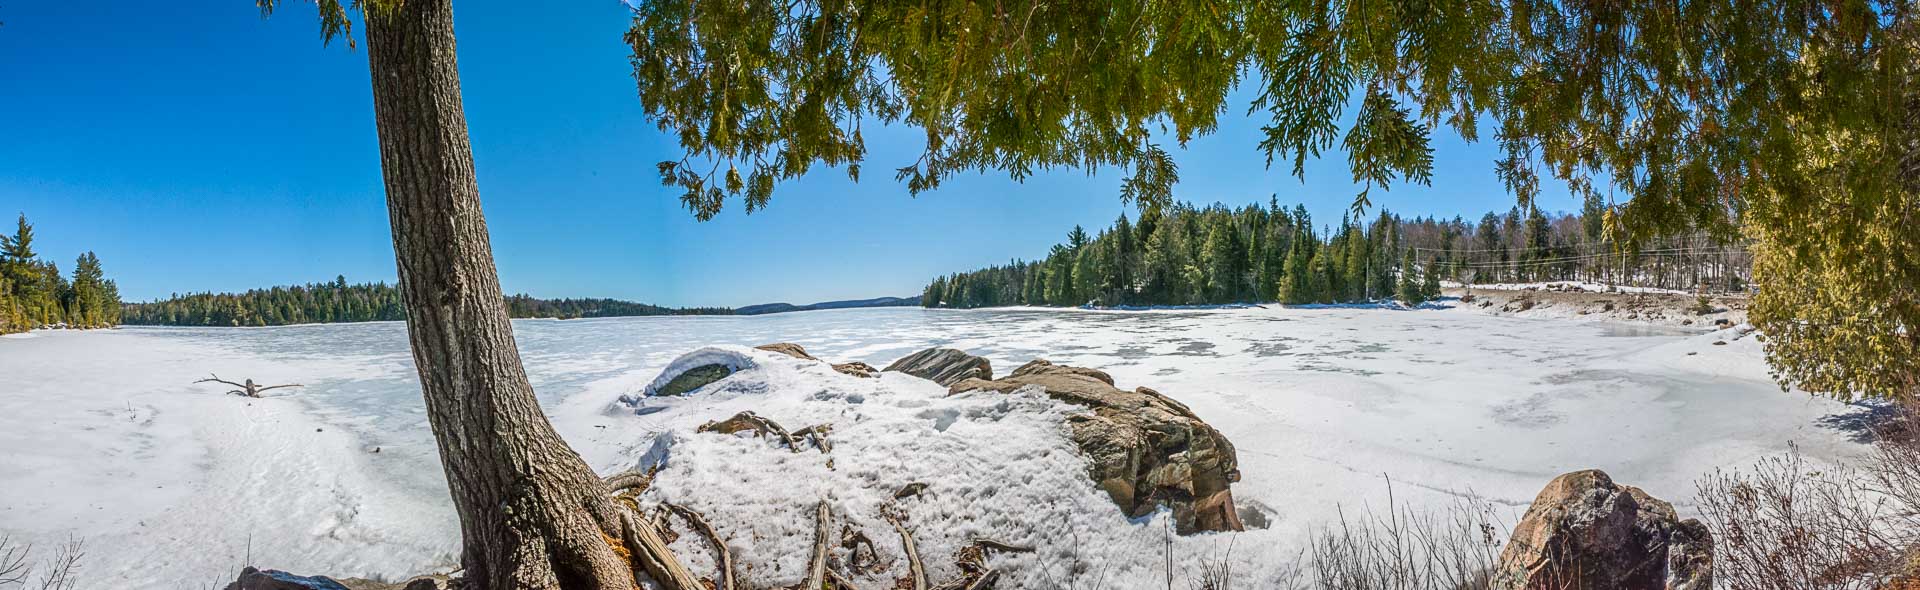 Algonquin Provincial Park Ice Out 2017